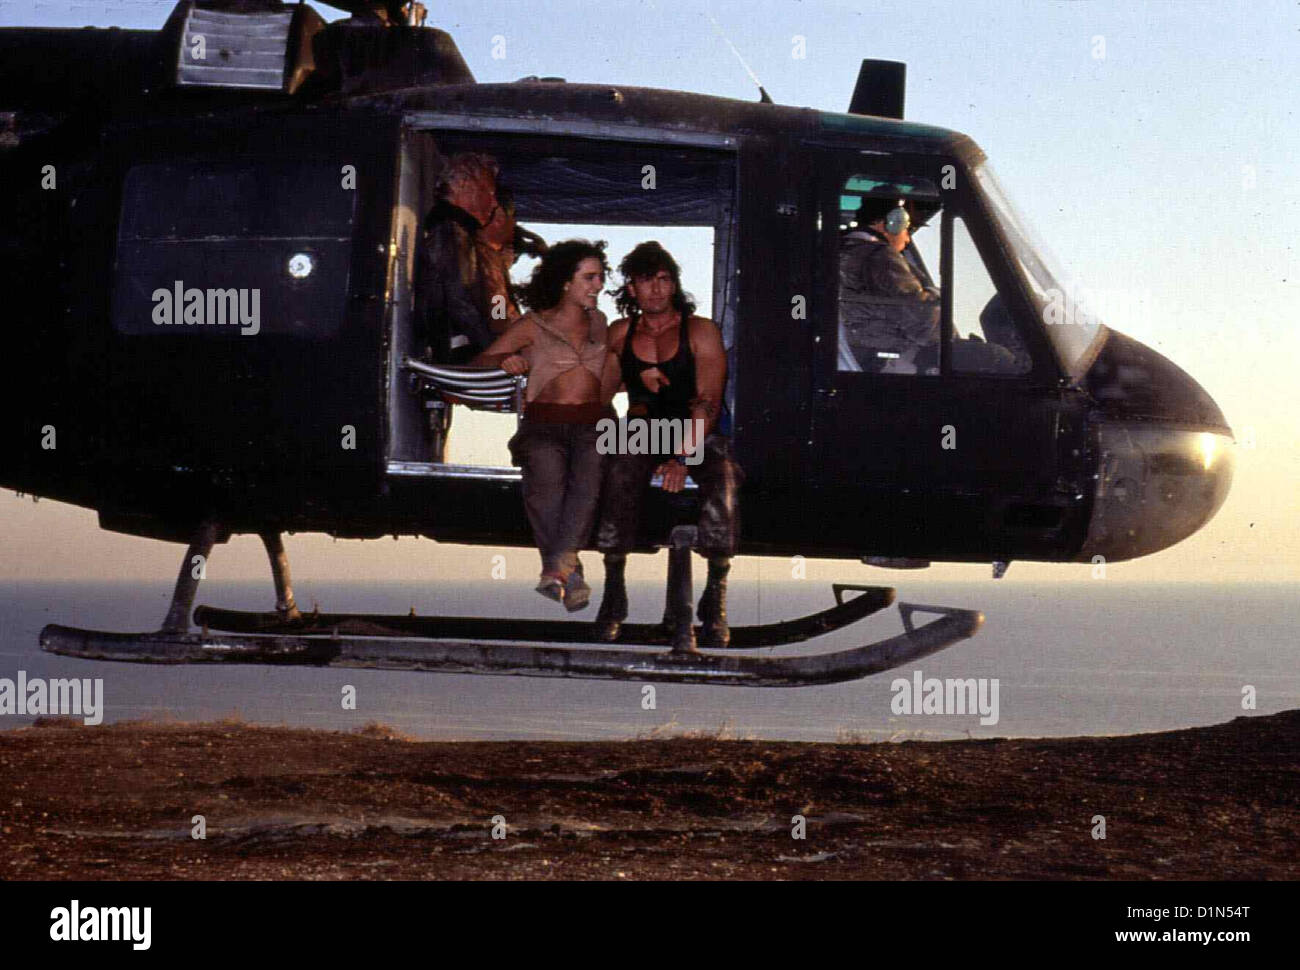 Hot Shots 2: Der 2. Versuch  Hot Shots 2  Valeria Golino, Charlie Sheen Auf dem Weg zum Einsatzort in einem Hubschrauber trifft Stock Photo